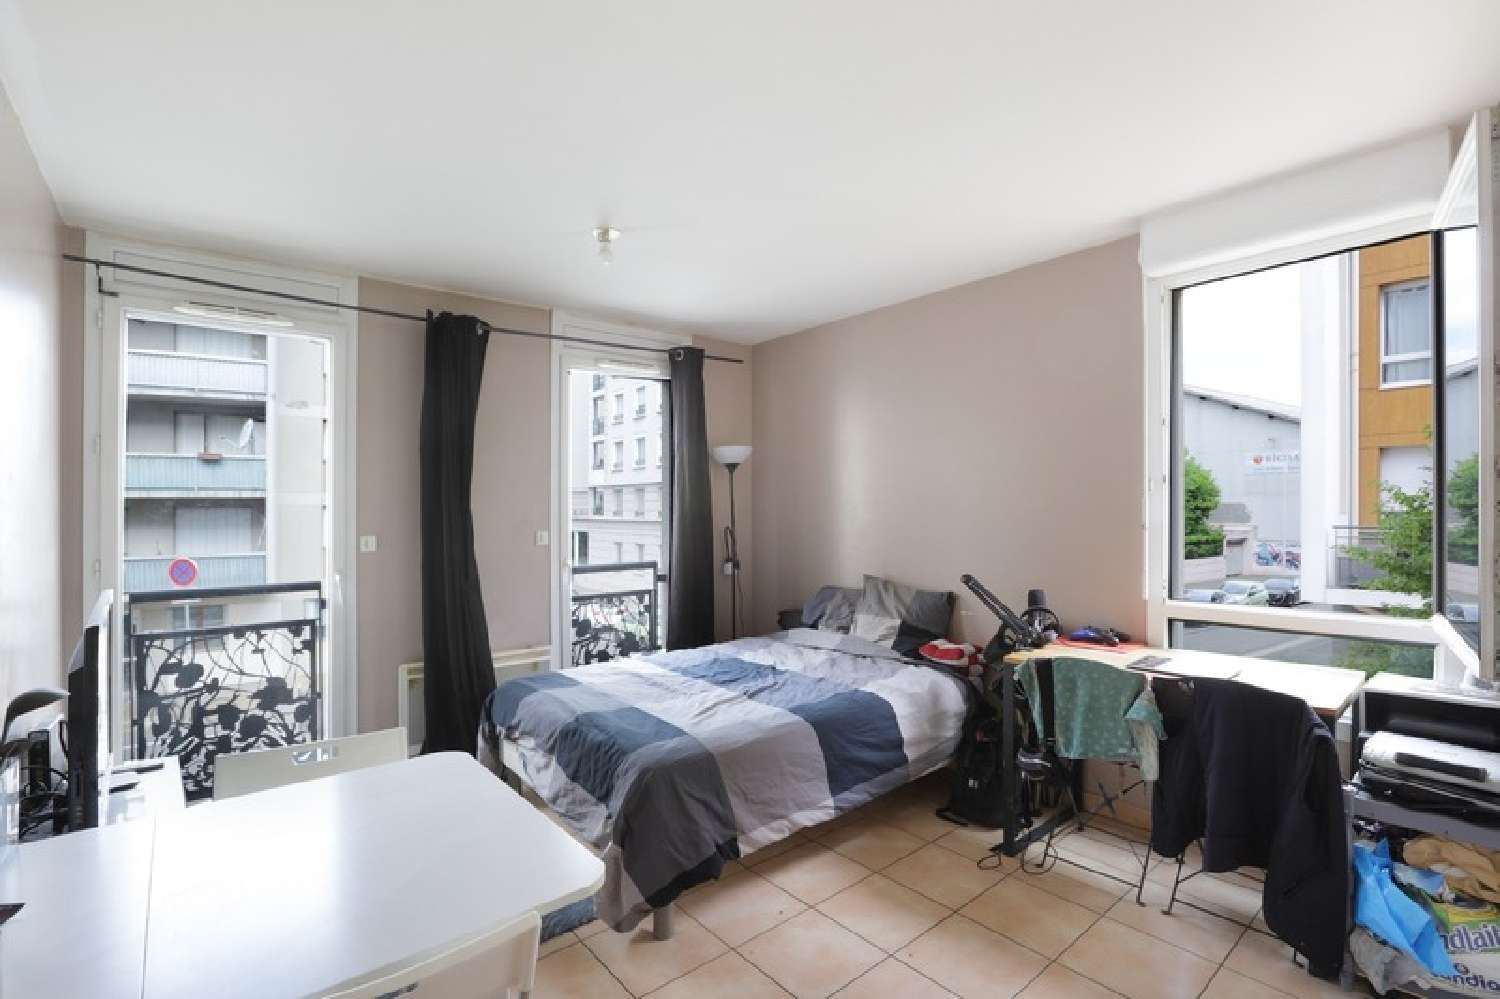  à vendre appartement Lyon 7e Arrondissement Rhône 2